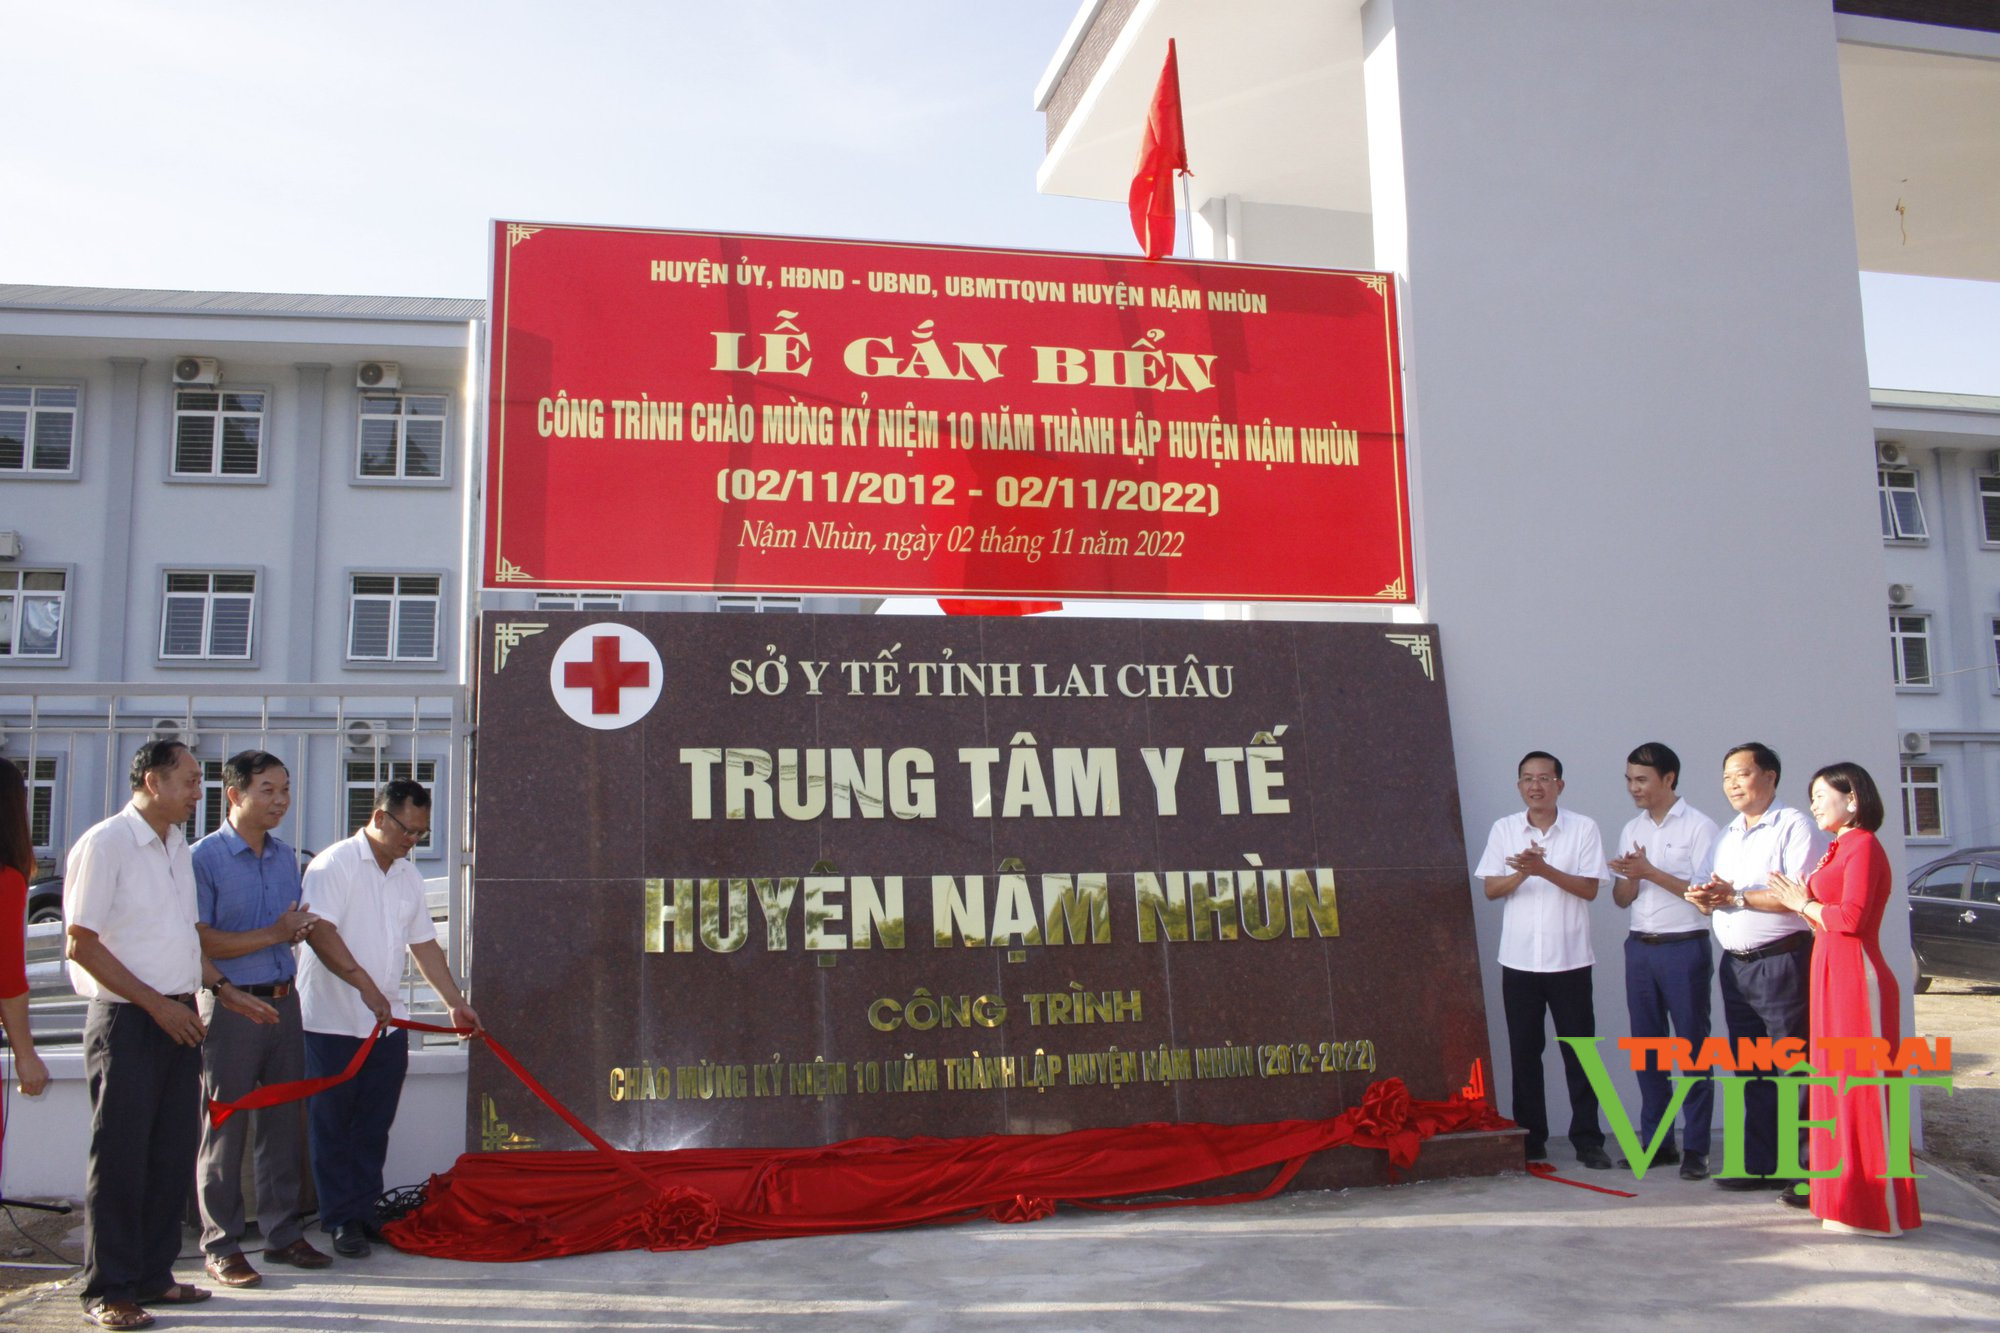 Lai Châu: Gắn biển công trình Trung tâm Y tế huyện Nậm Nhùn - Ảnh 2.